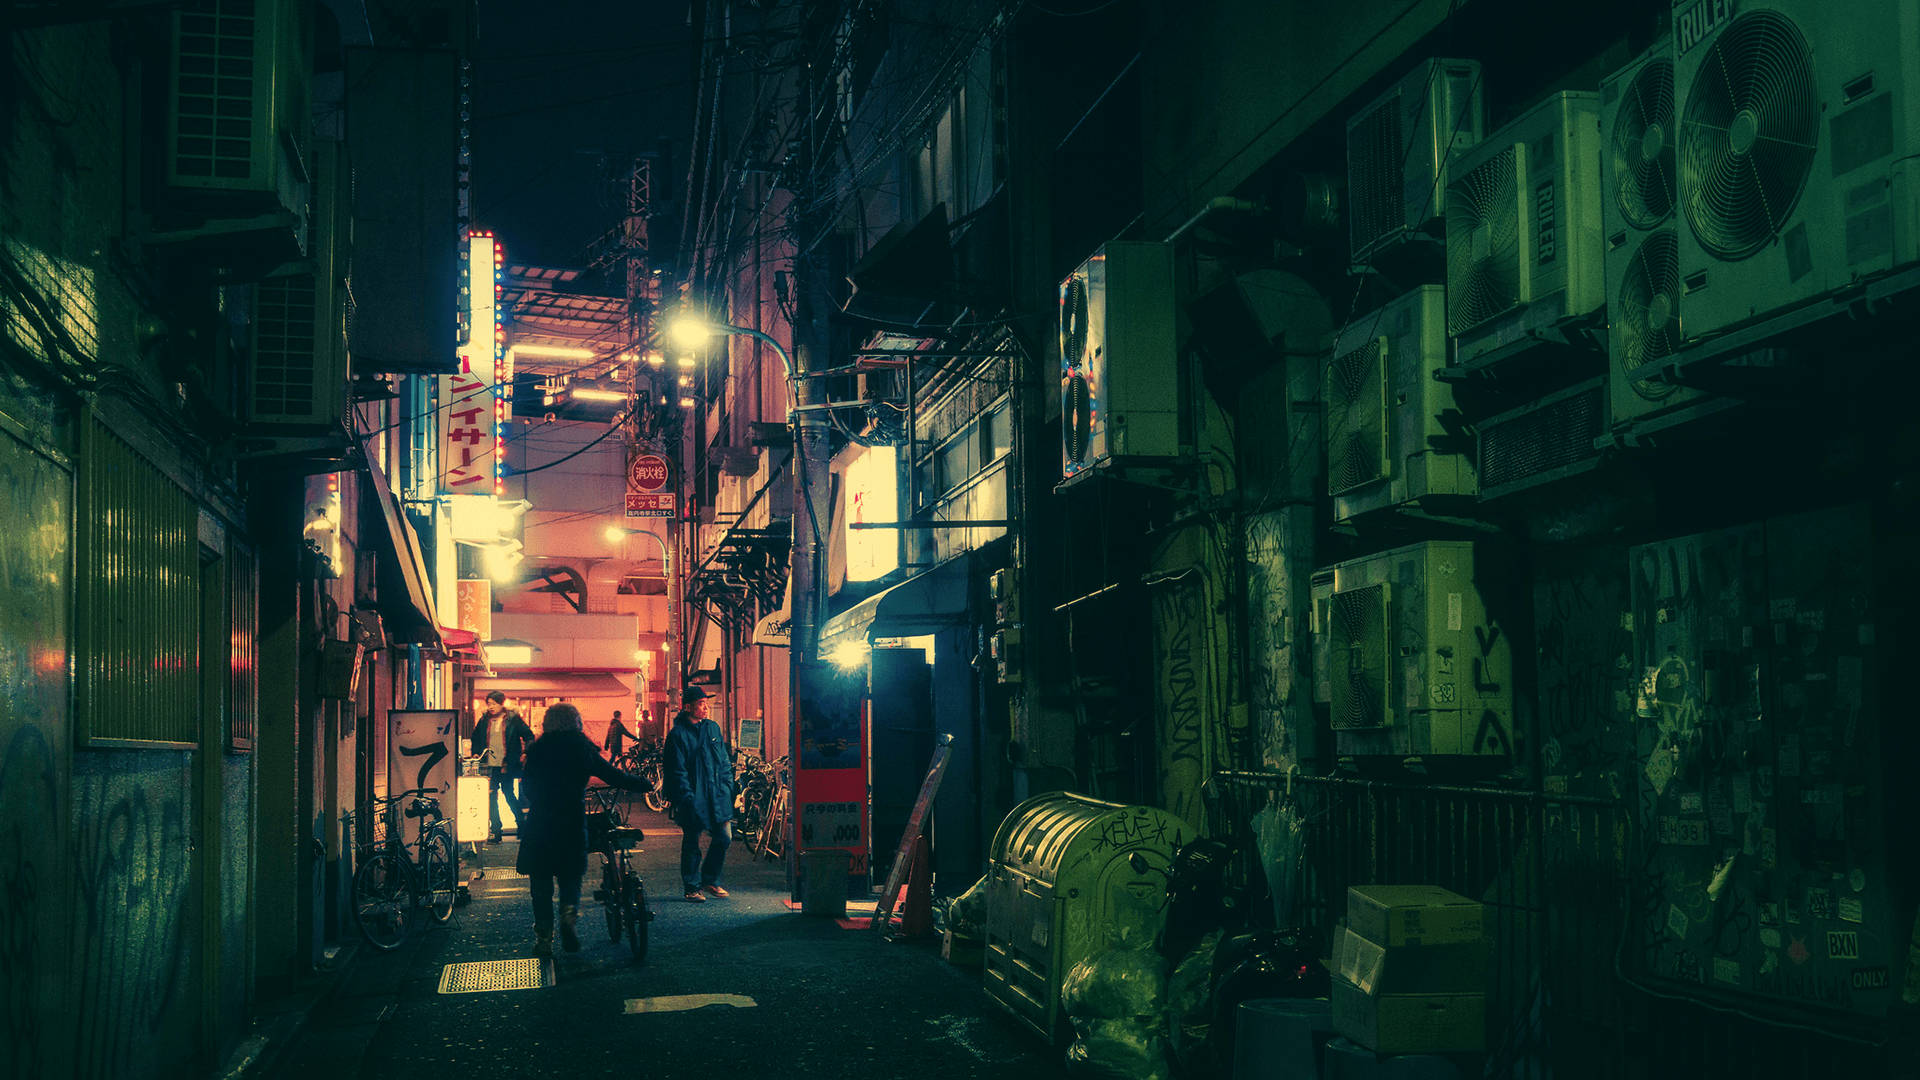 Dark Tokyo Street Background